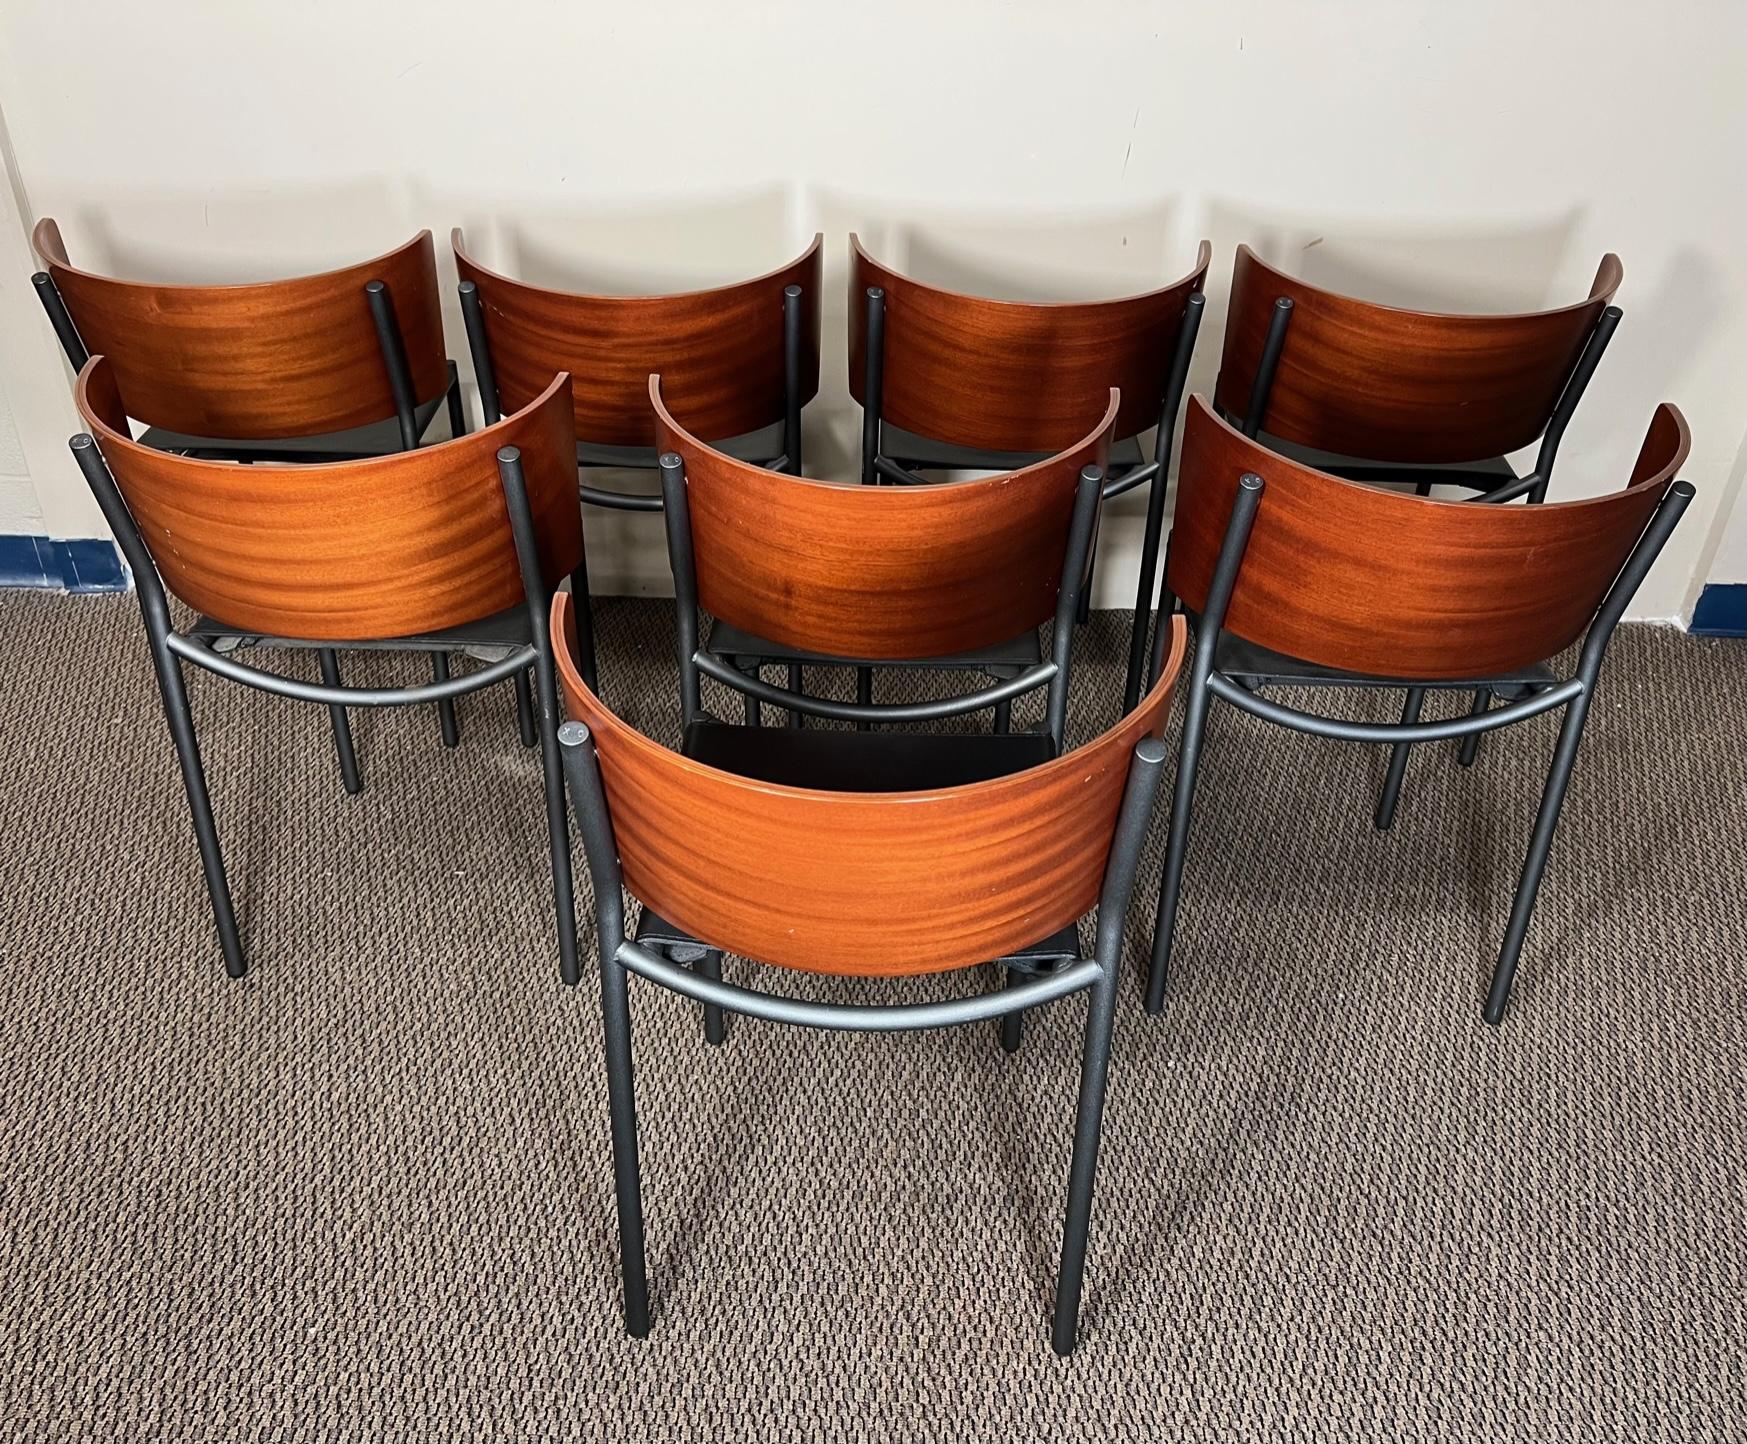 Bel ensemble de 8 chaises avec dossier en bois courbé et cadre en acier. Chaises Lila Hunter de Philippe Starck pour XO.

Très bon état général. Toutes les chaises sont très robustes. Sièges en cuir noir. Quelques marques d'une utilisation normale.